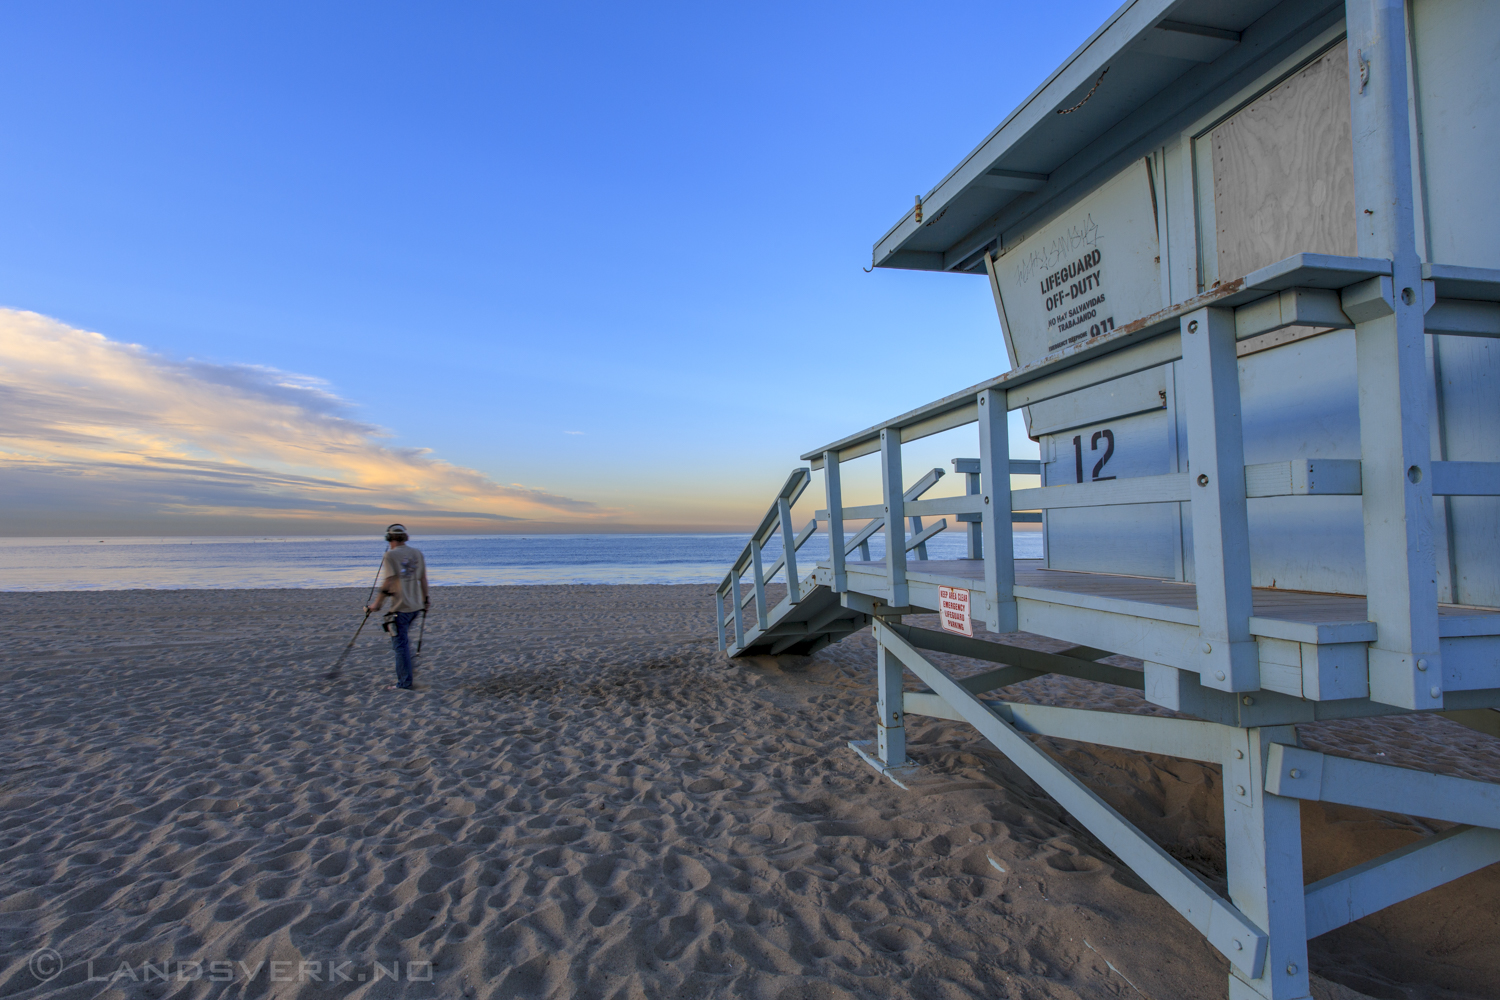 Santa Monica, California. 

(Canon EOS 5D Mark III / Canon EF 16-35mm f/2.8 L II USM)